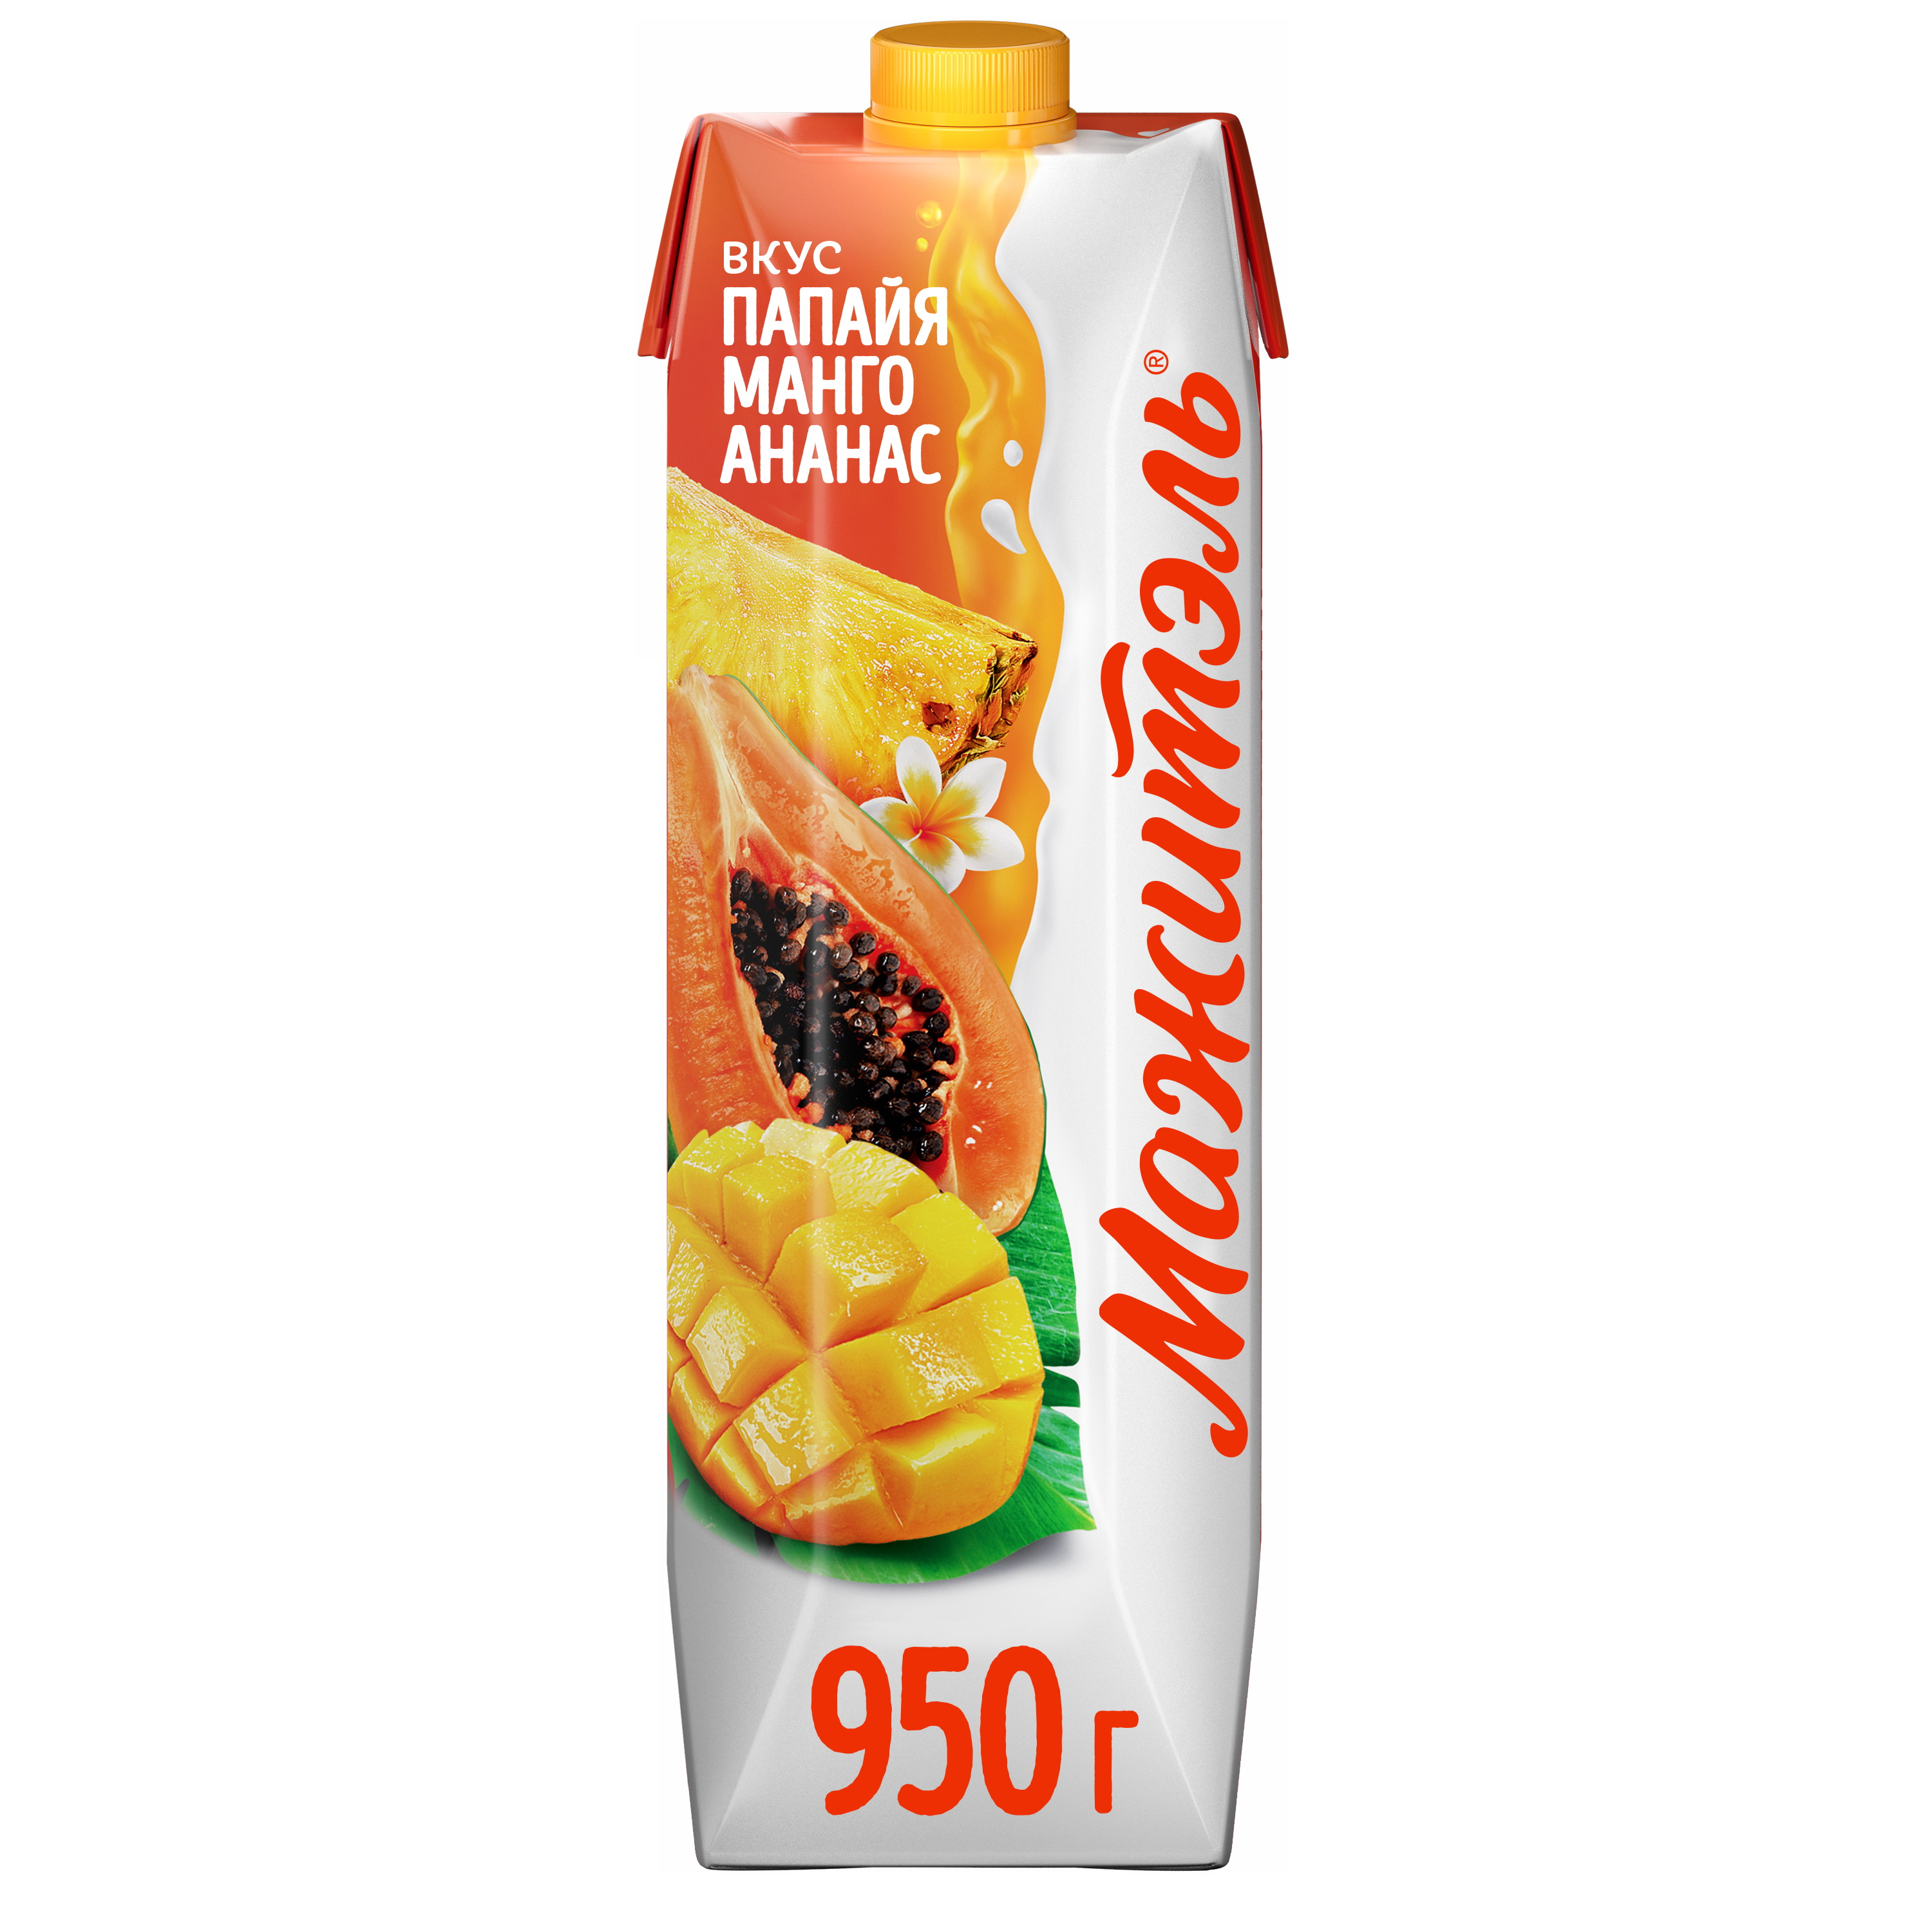 Напиток сывороточный Мажитэль папайя, манго и ананас, 950 г